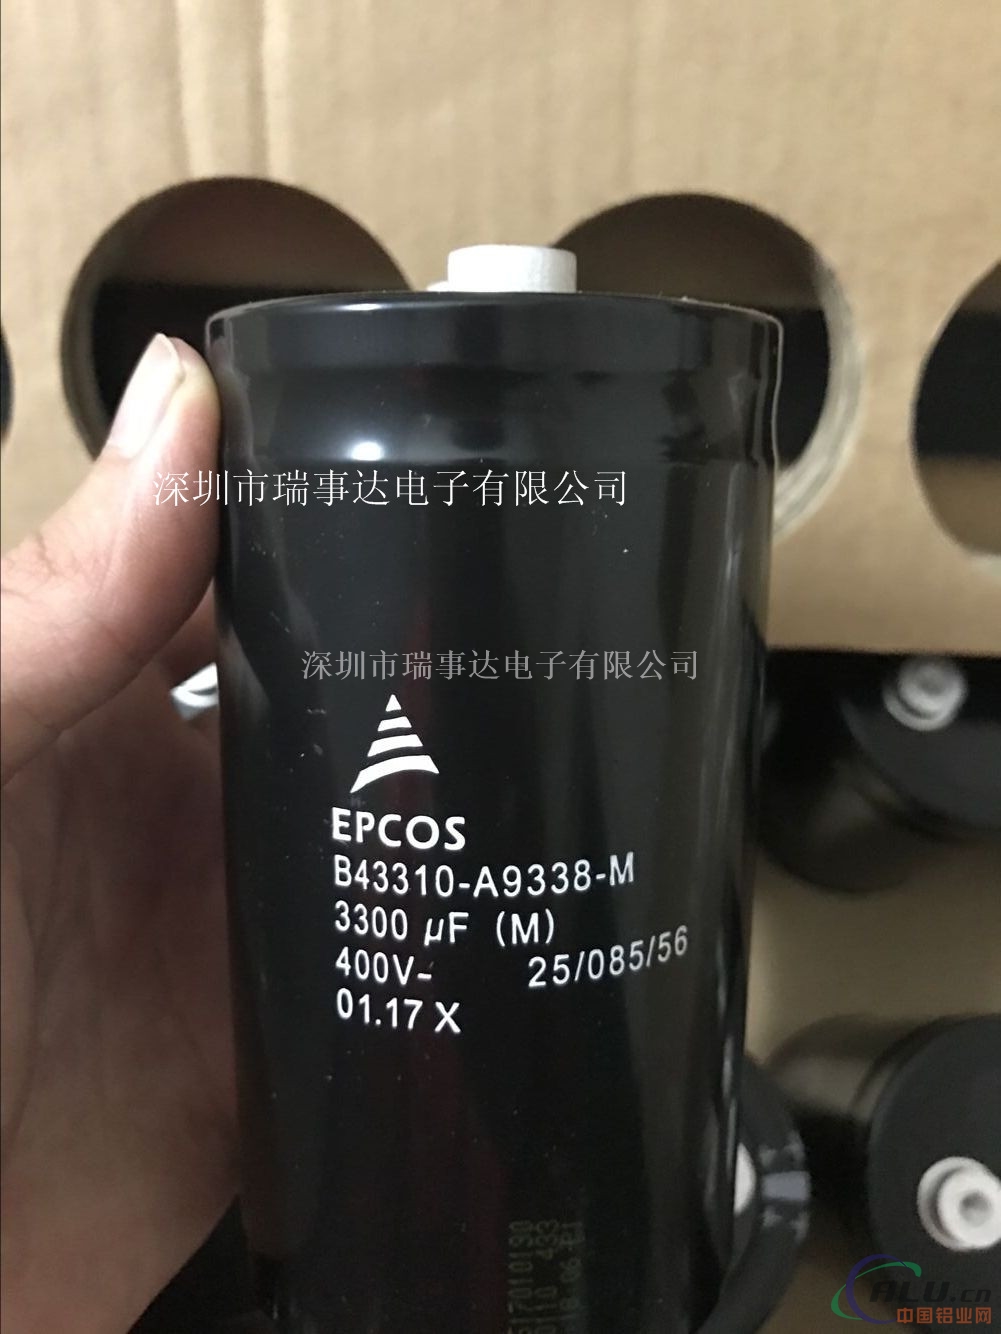 EPCOS B43310-A9338-M铝电容器3300uF400V